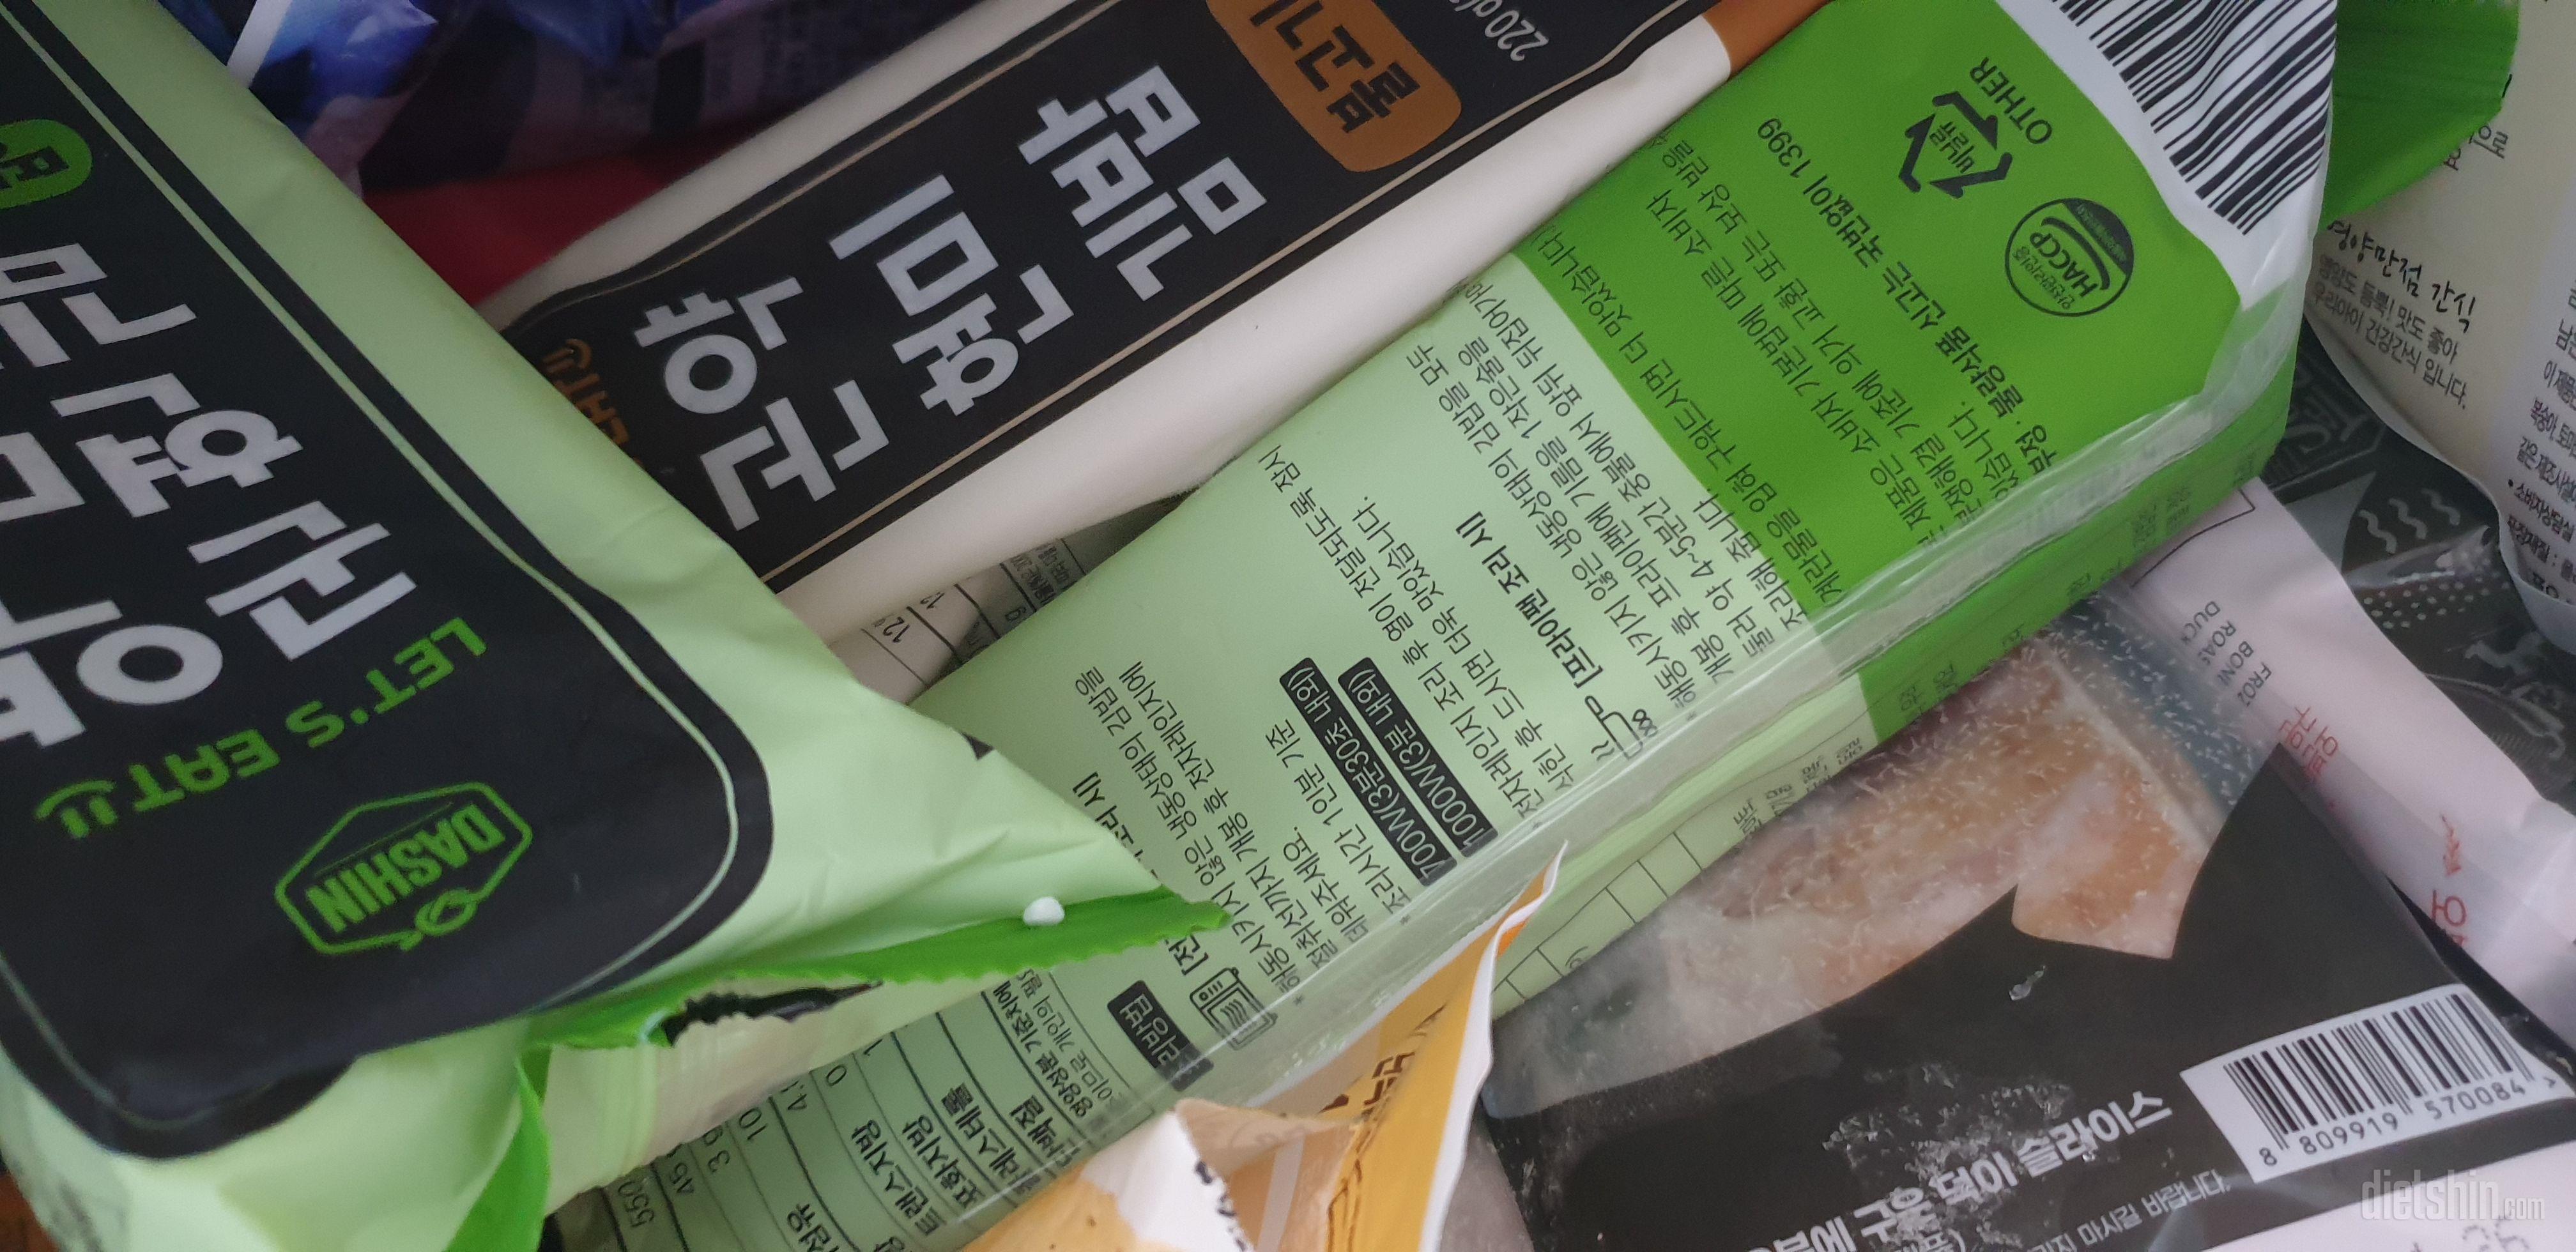 김밥 너무 맛있어서 집에 한가득 보관